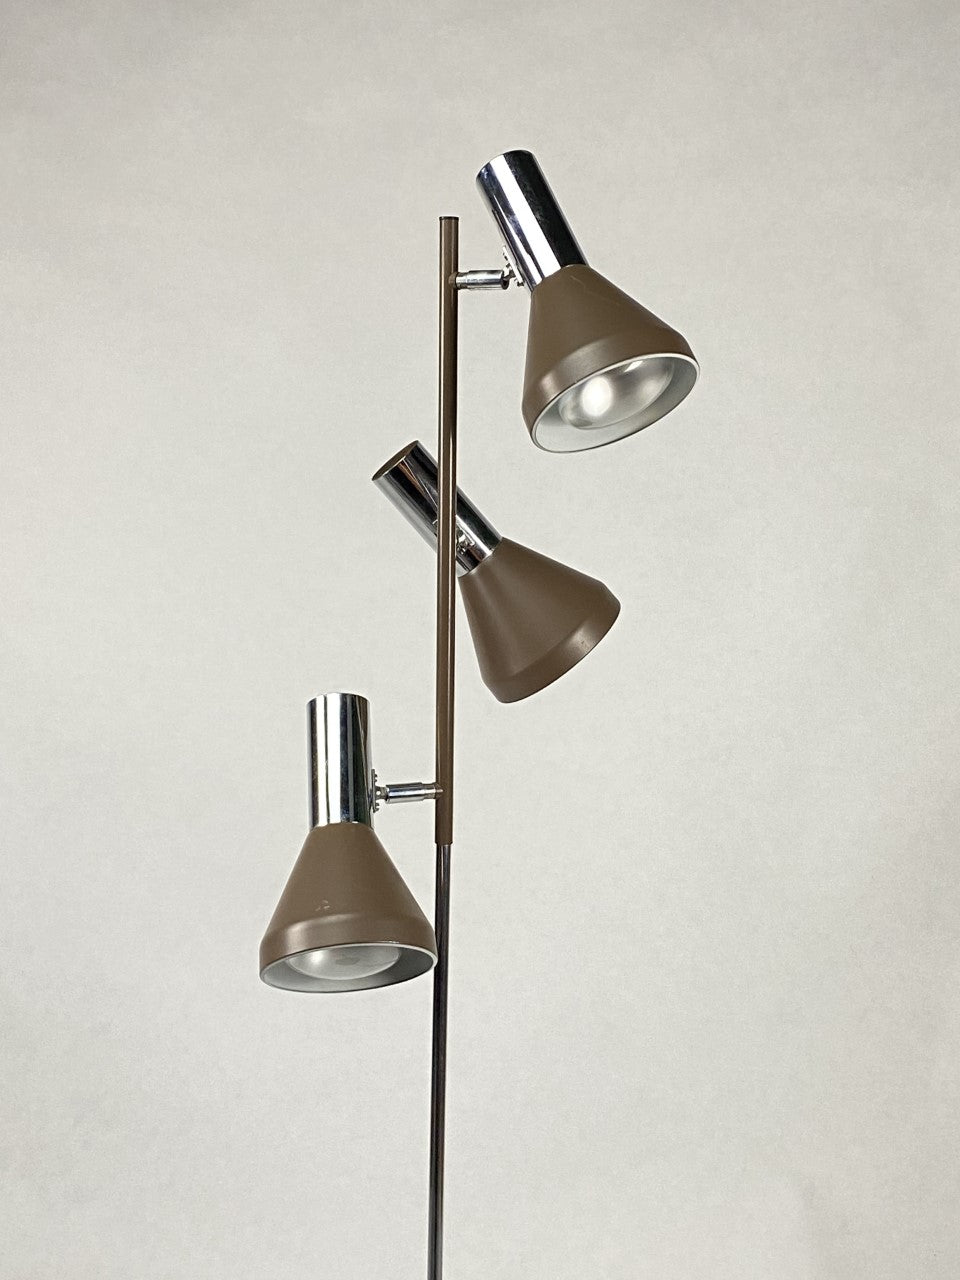 Chromed floor lamp by Hustadt Leuchten